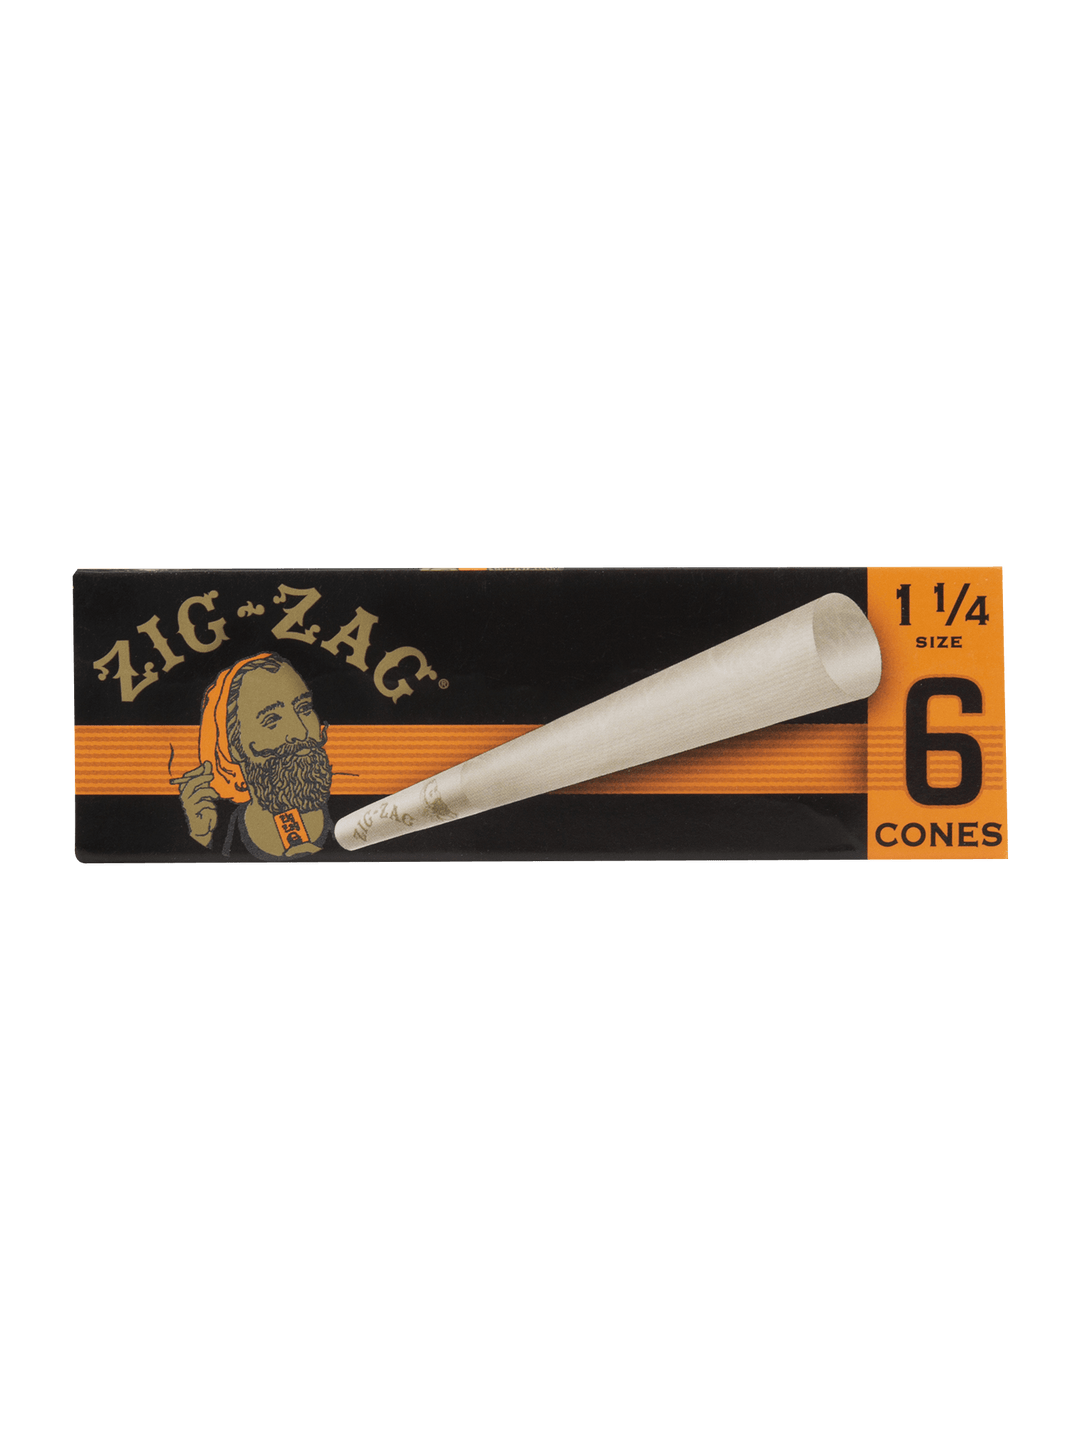 Zig-Zag 1 1/4 6 Cones (Box of 24) - Quecan